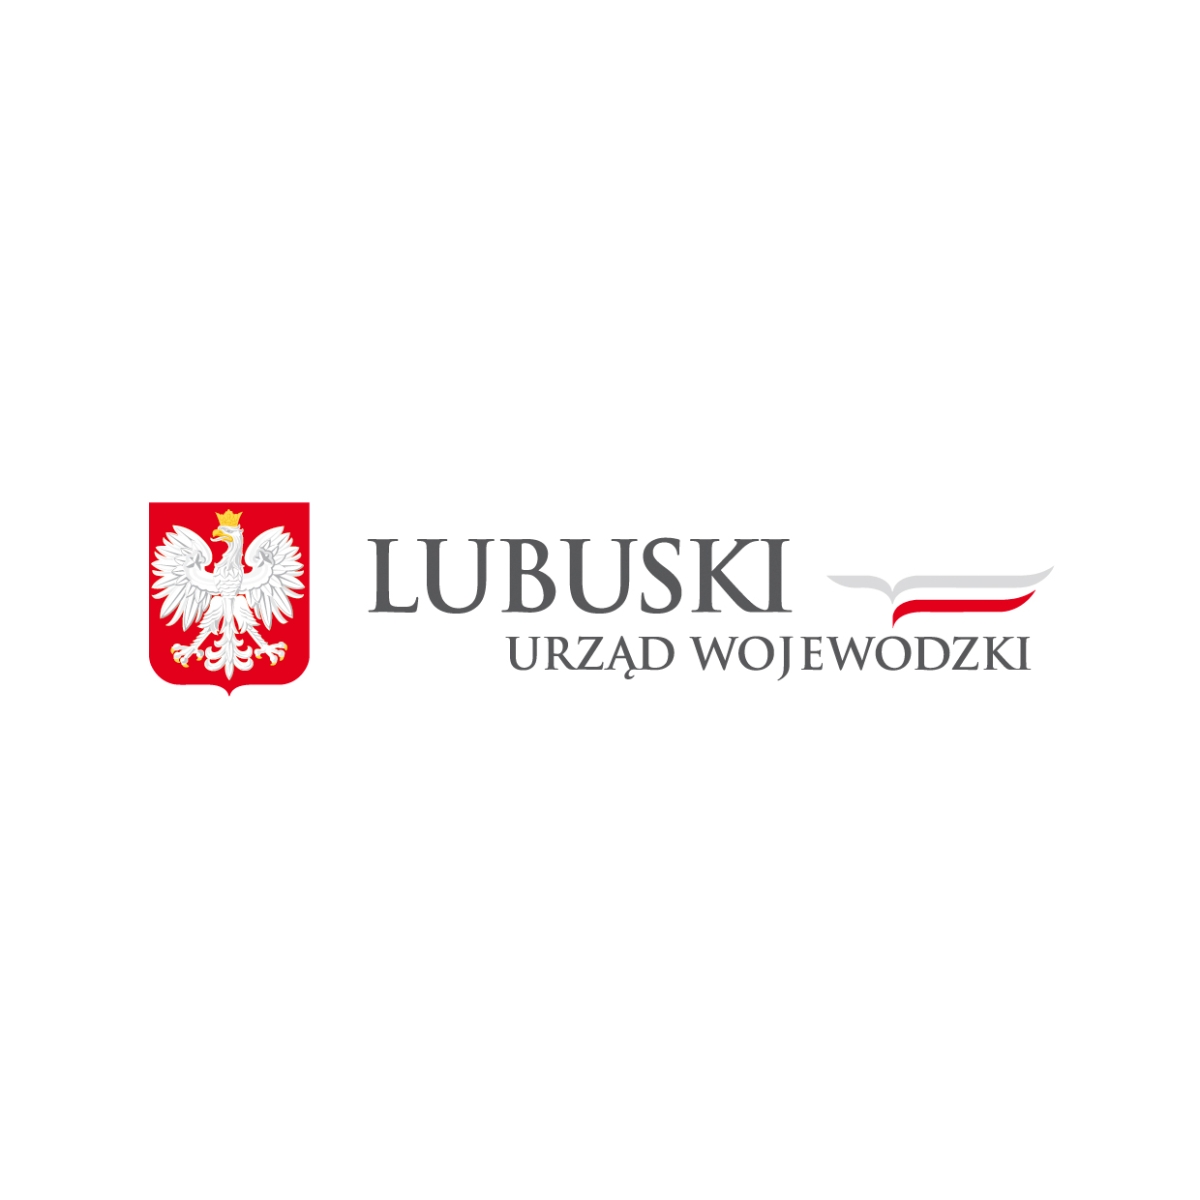 Rozporządzenie Wojewody Lubuskiego z dn. 7 grudnia 2022 r. zmieniające rozporządzenie w sprawie odstrzału sanitarnego dzików na terenie województwa lubuskiego